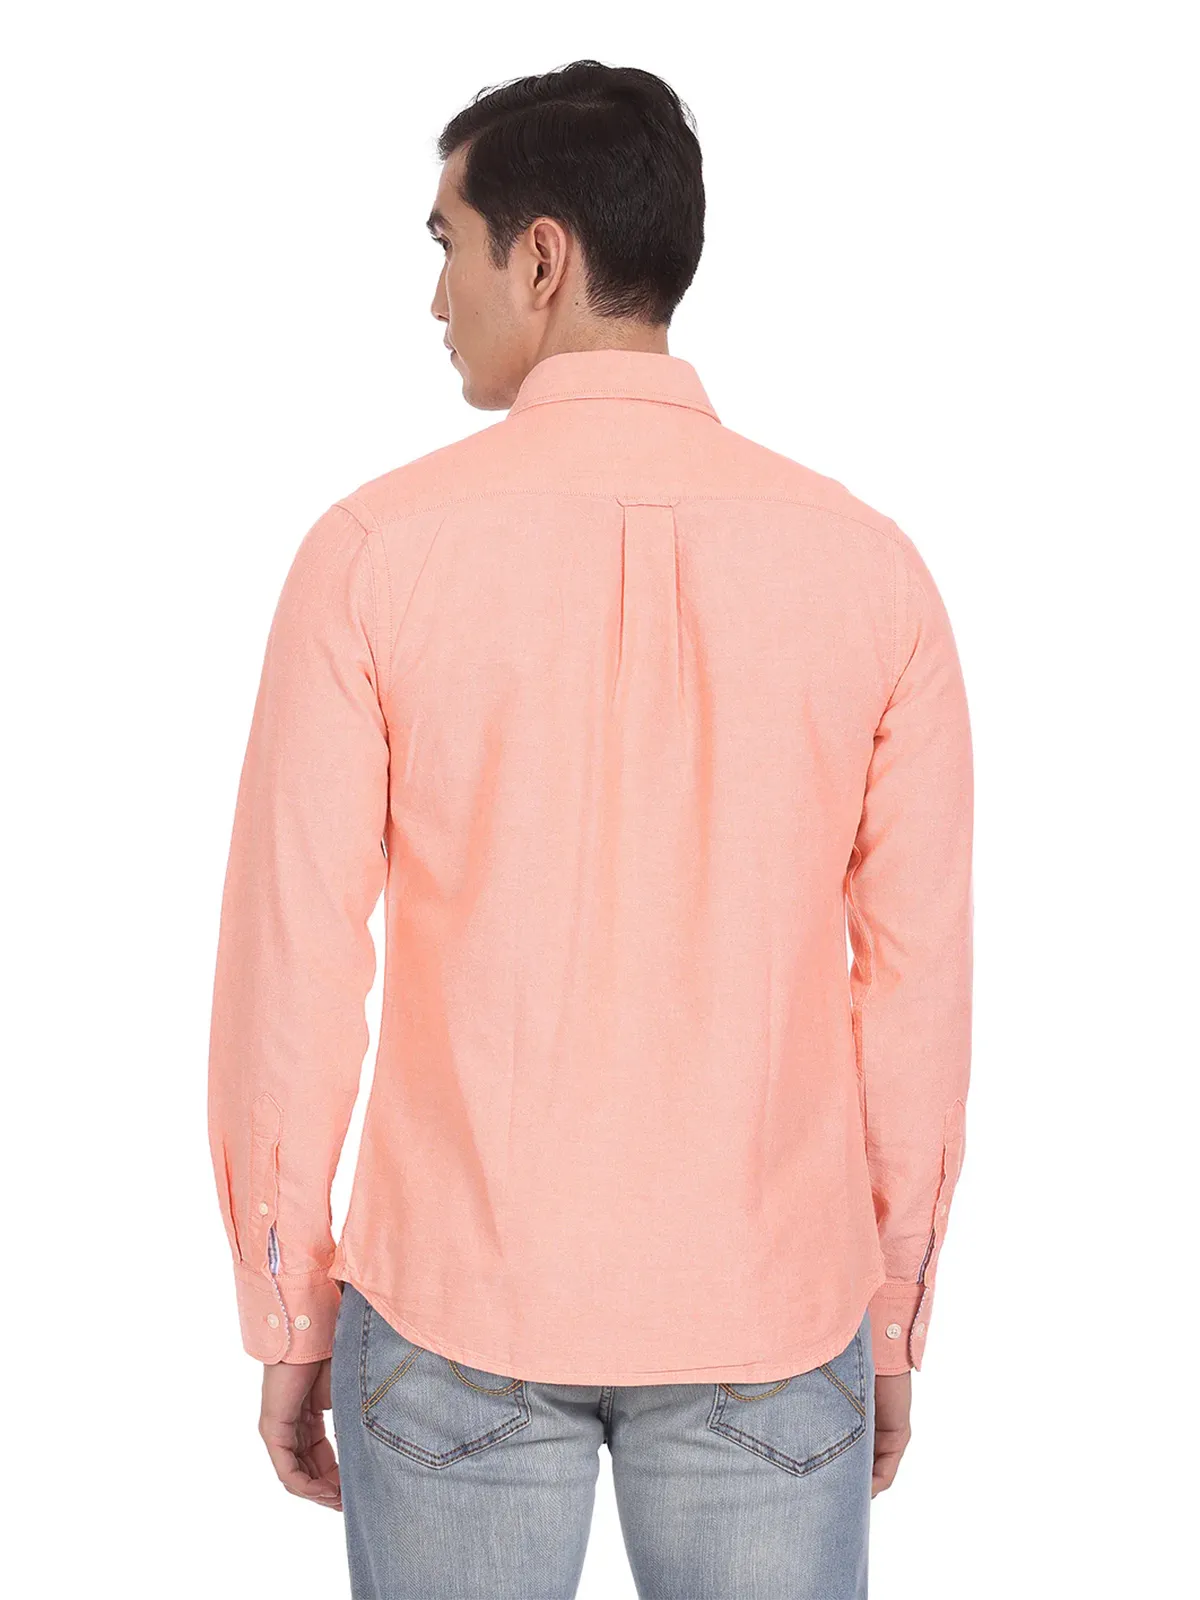 U S POLO ASSN peach cotton plain casual shirt